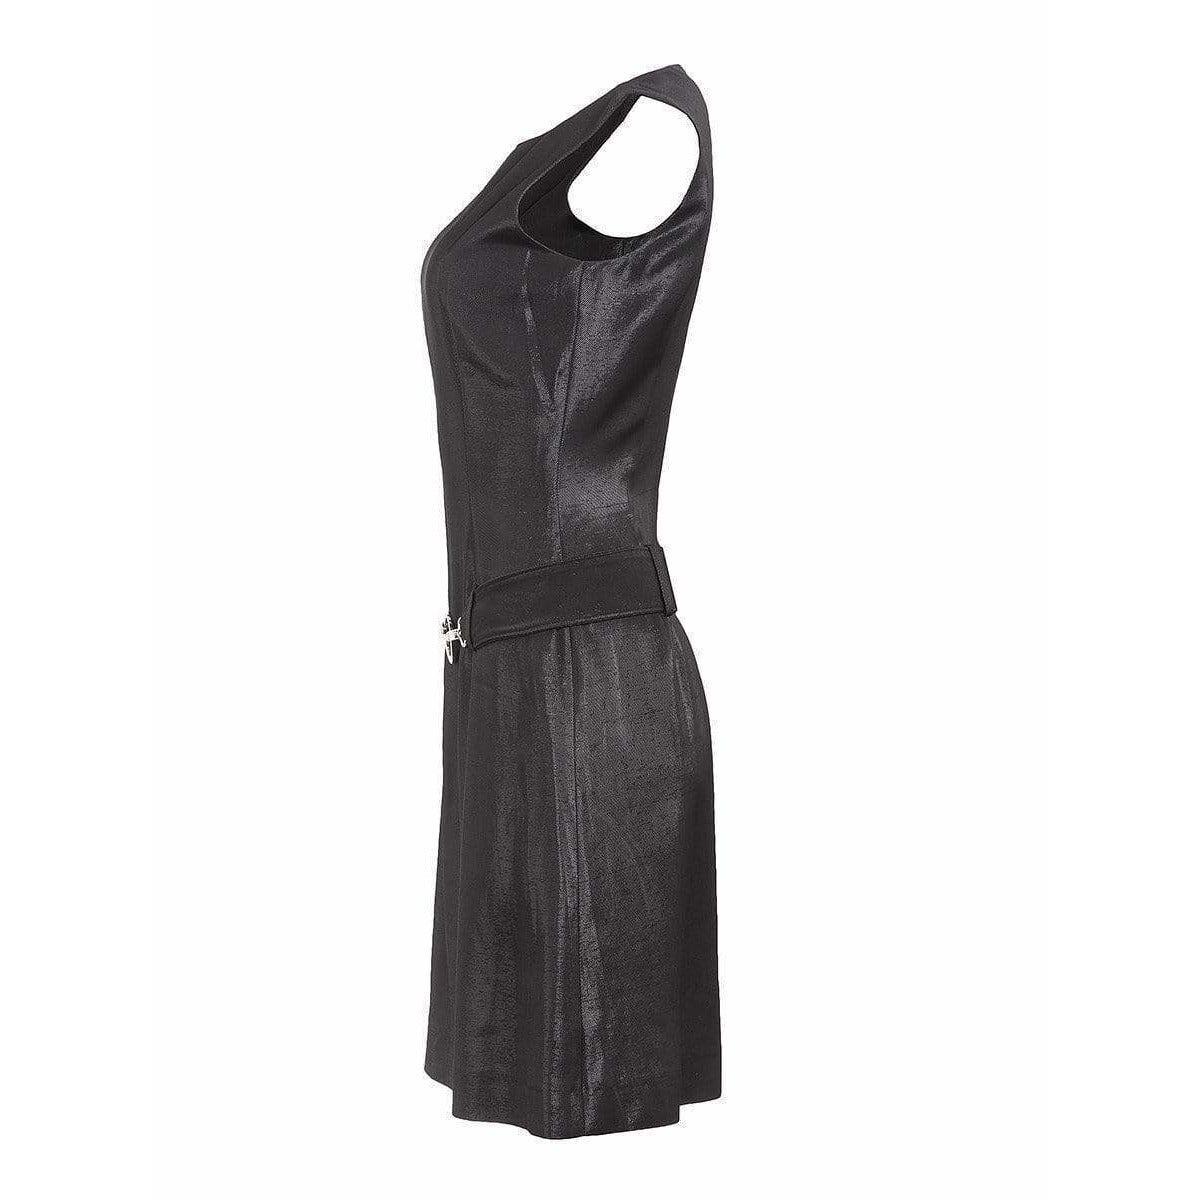 sleeveless-belted-dress Dresses Dark Slate Gray